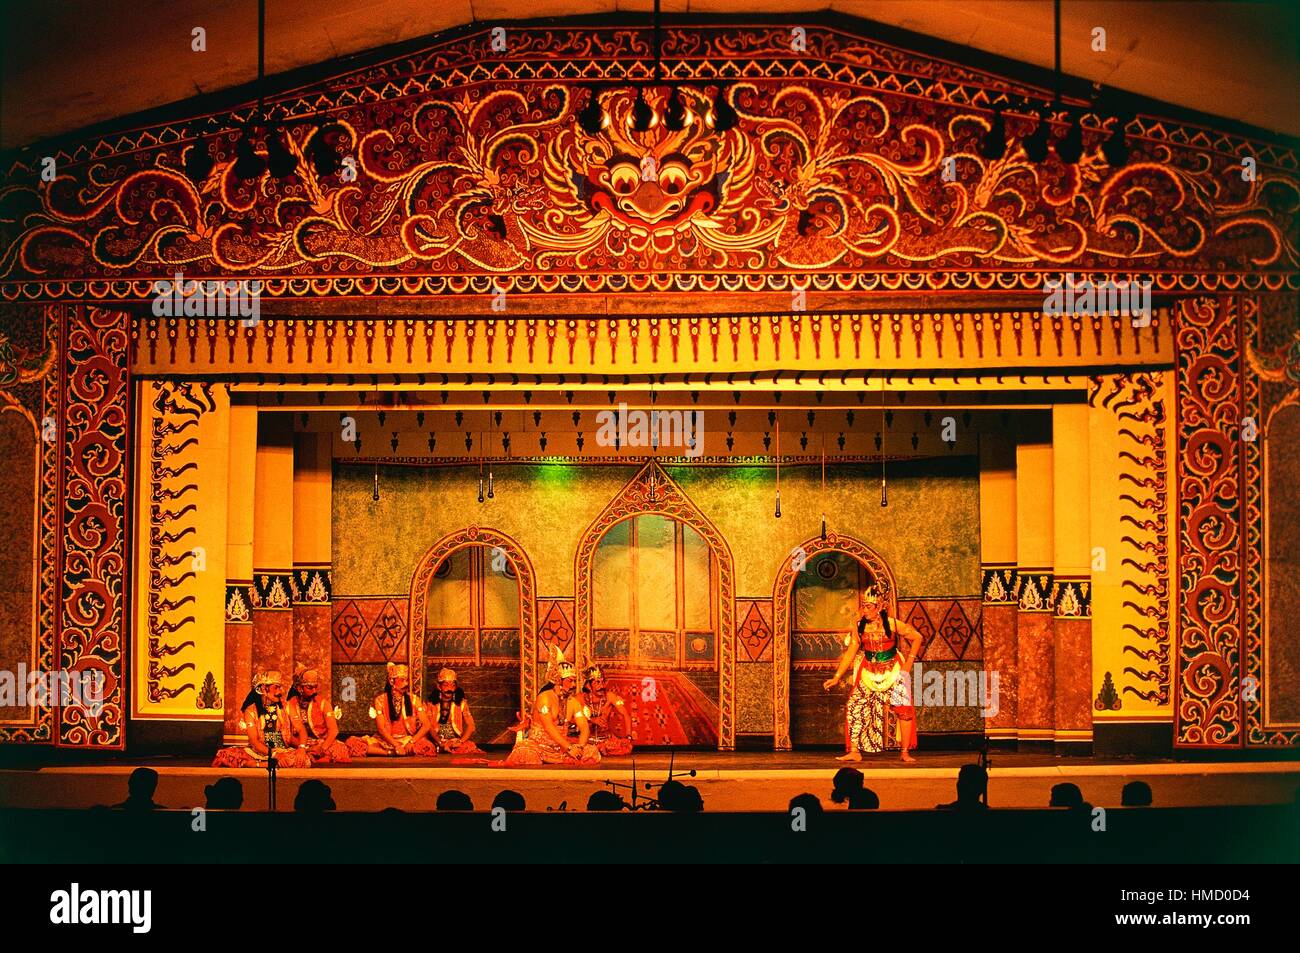 Le wayang kulit ombre permanente (marionnettes) Théâtre, Taman Sriwedari, Surakarta, Java, Indonésie. Banque D'Images